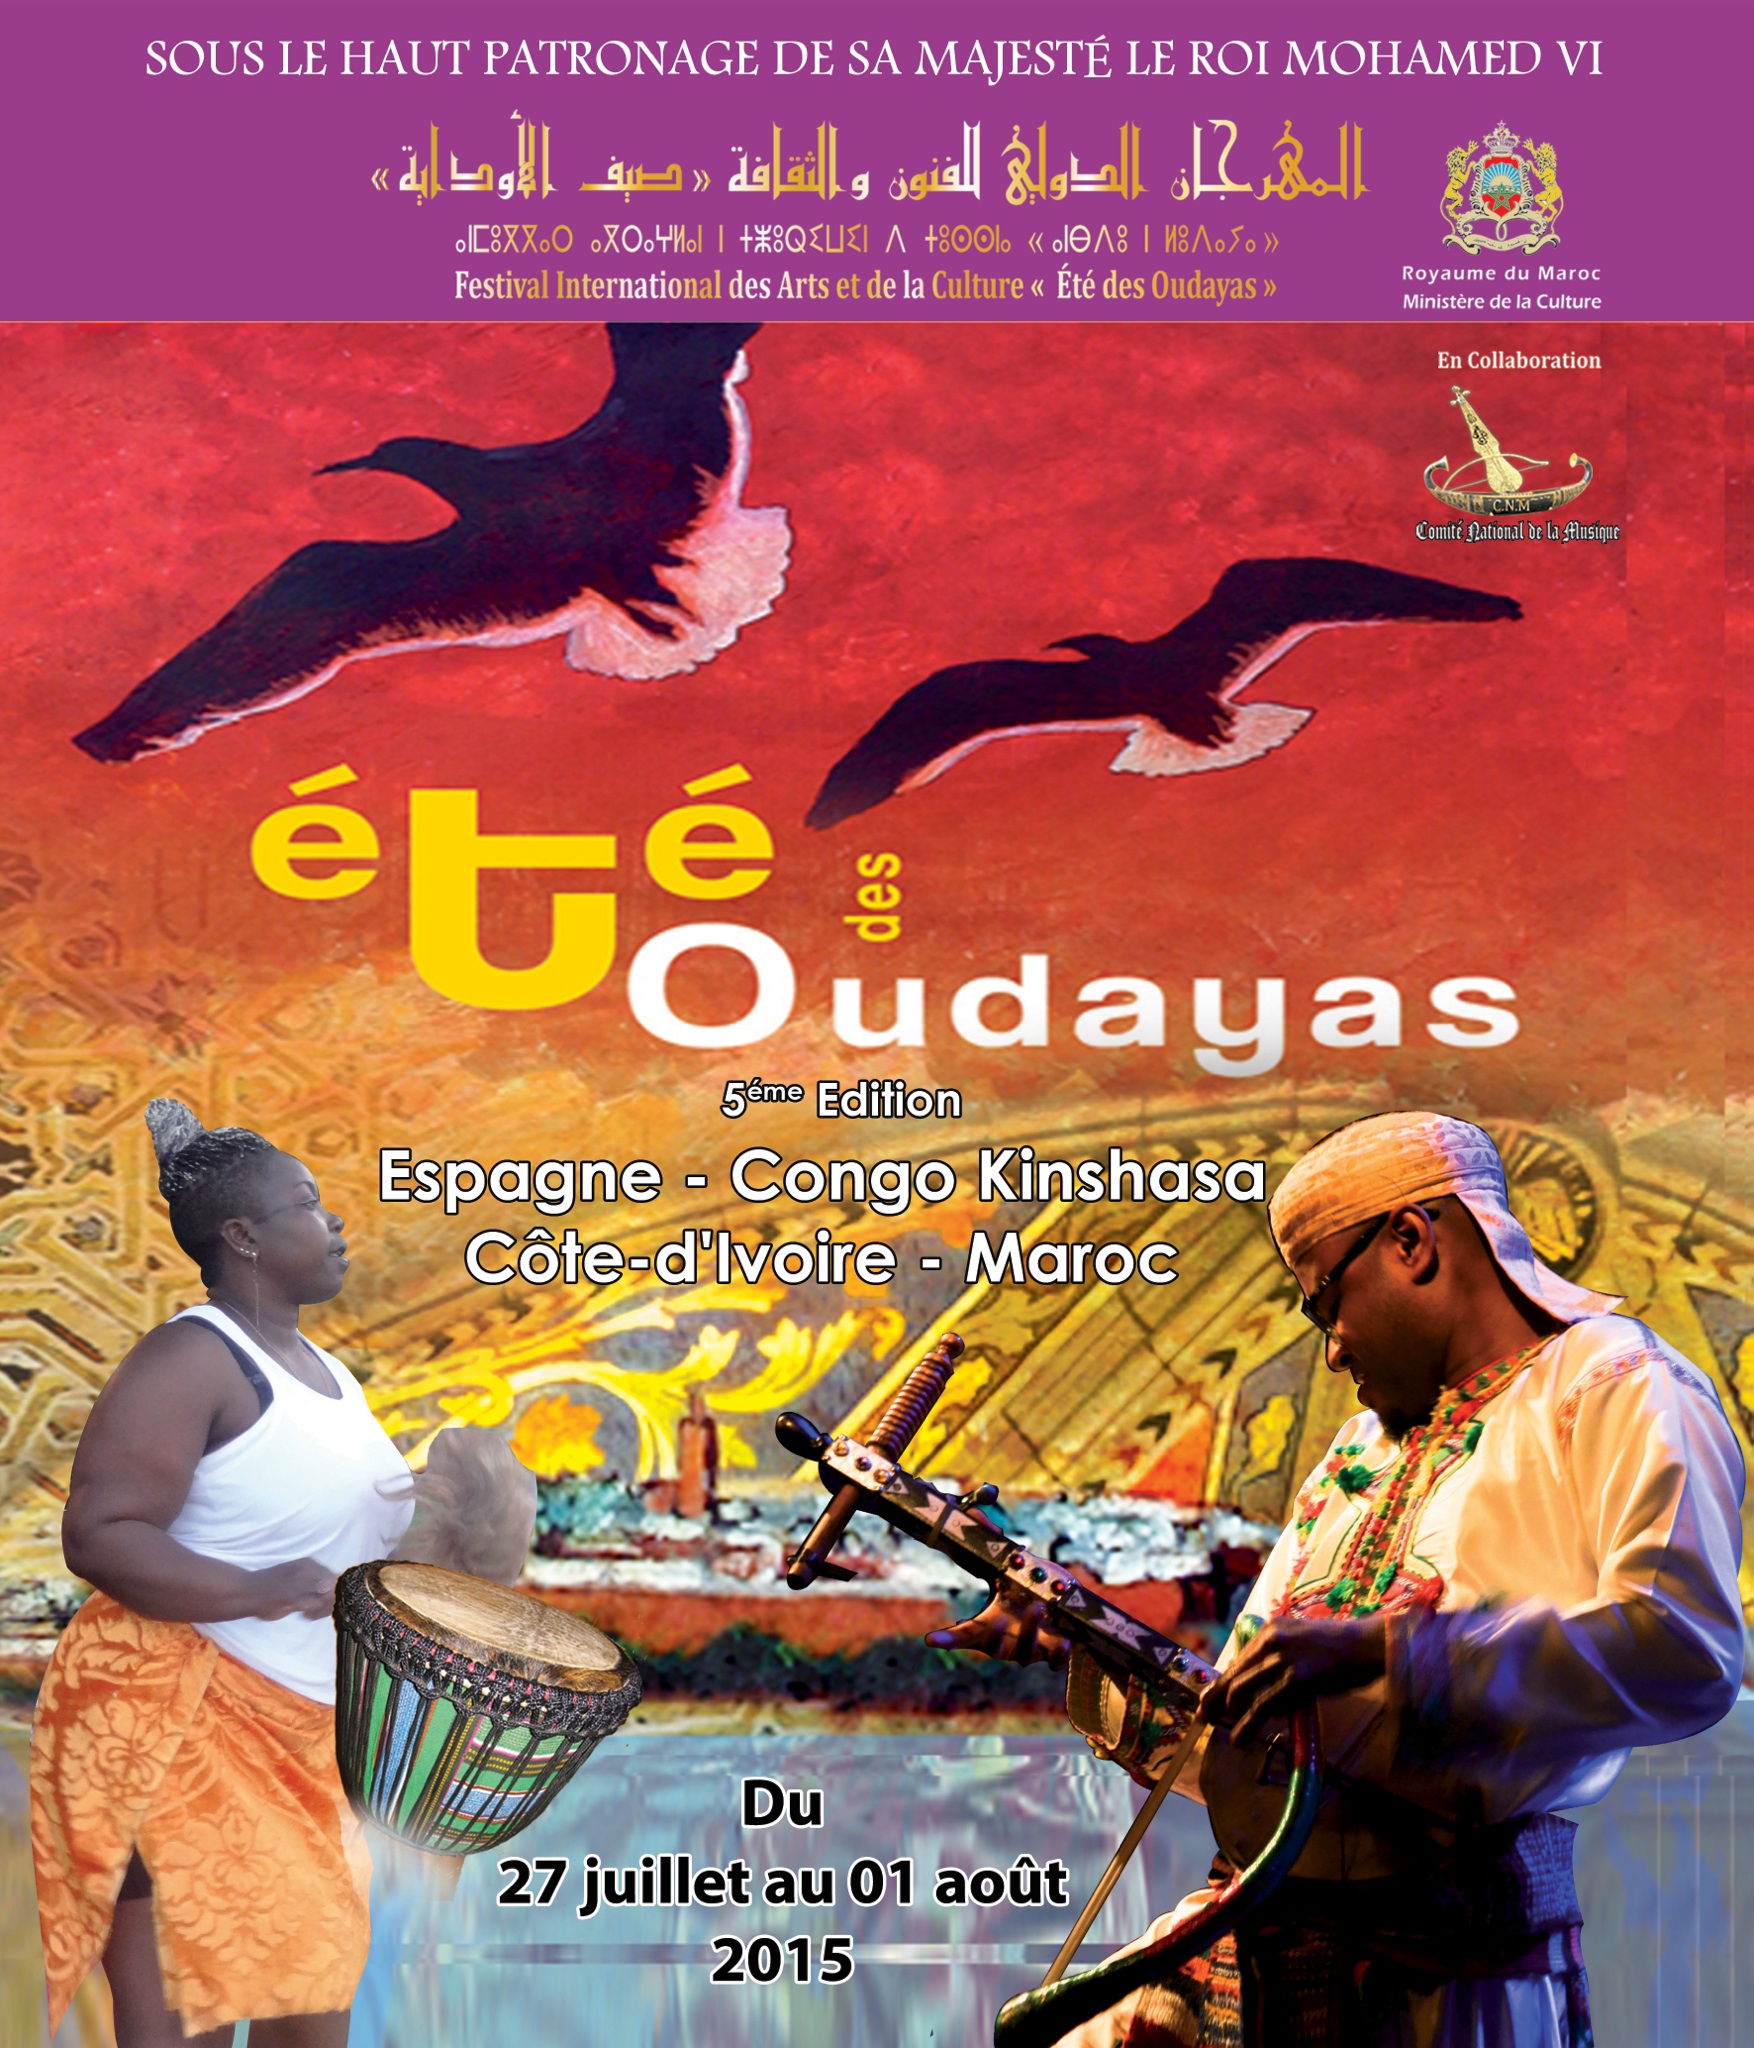 Flamenco et musique africaine pour animer l’Eté des Oudayas